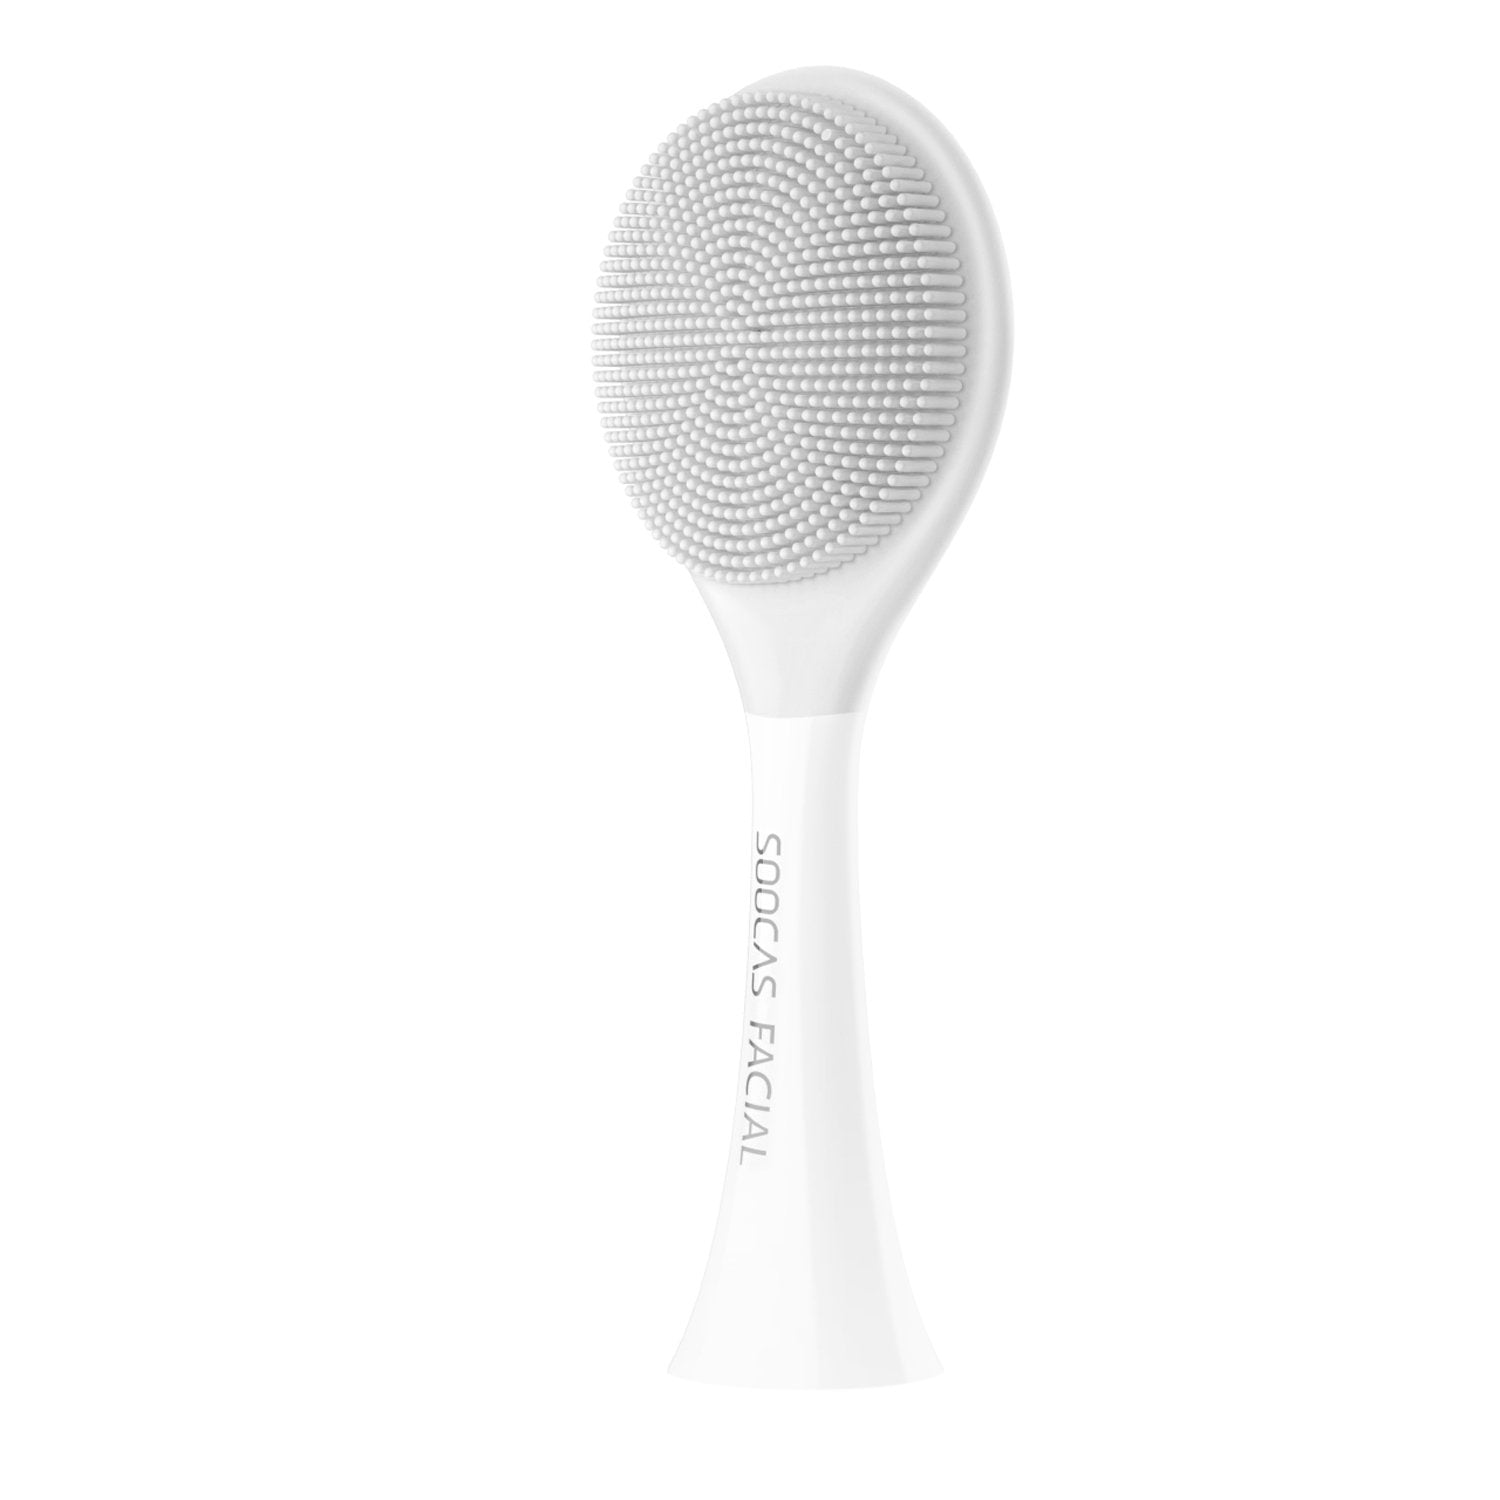 Soocas Original Silicone Facial Cleansing Brush Head for X1/ X3U/ X5, Gray Default Soocas Default 